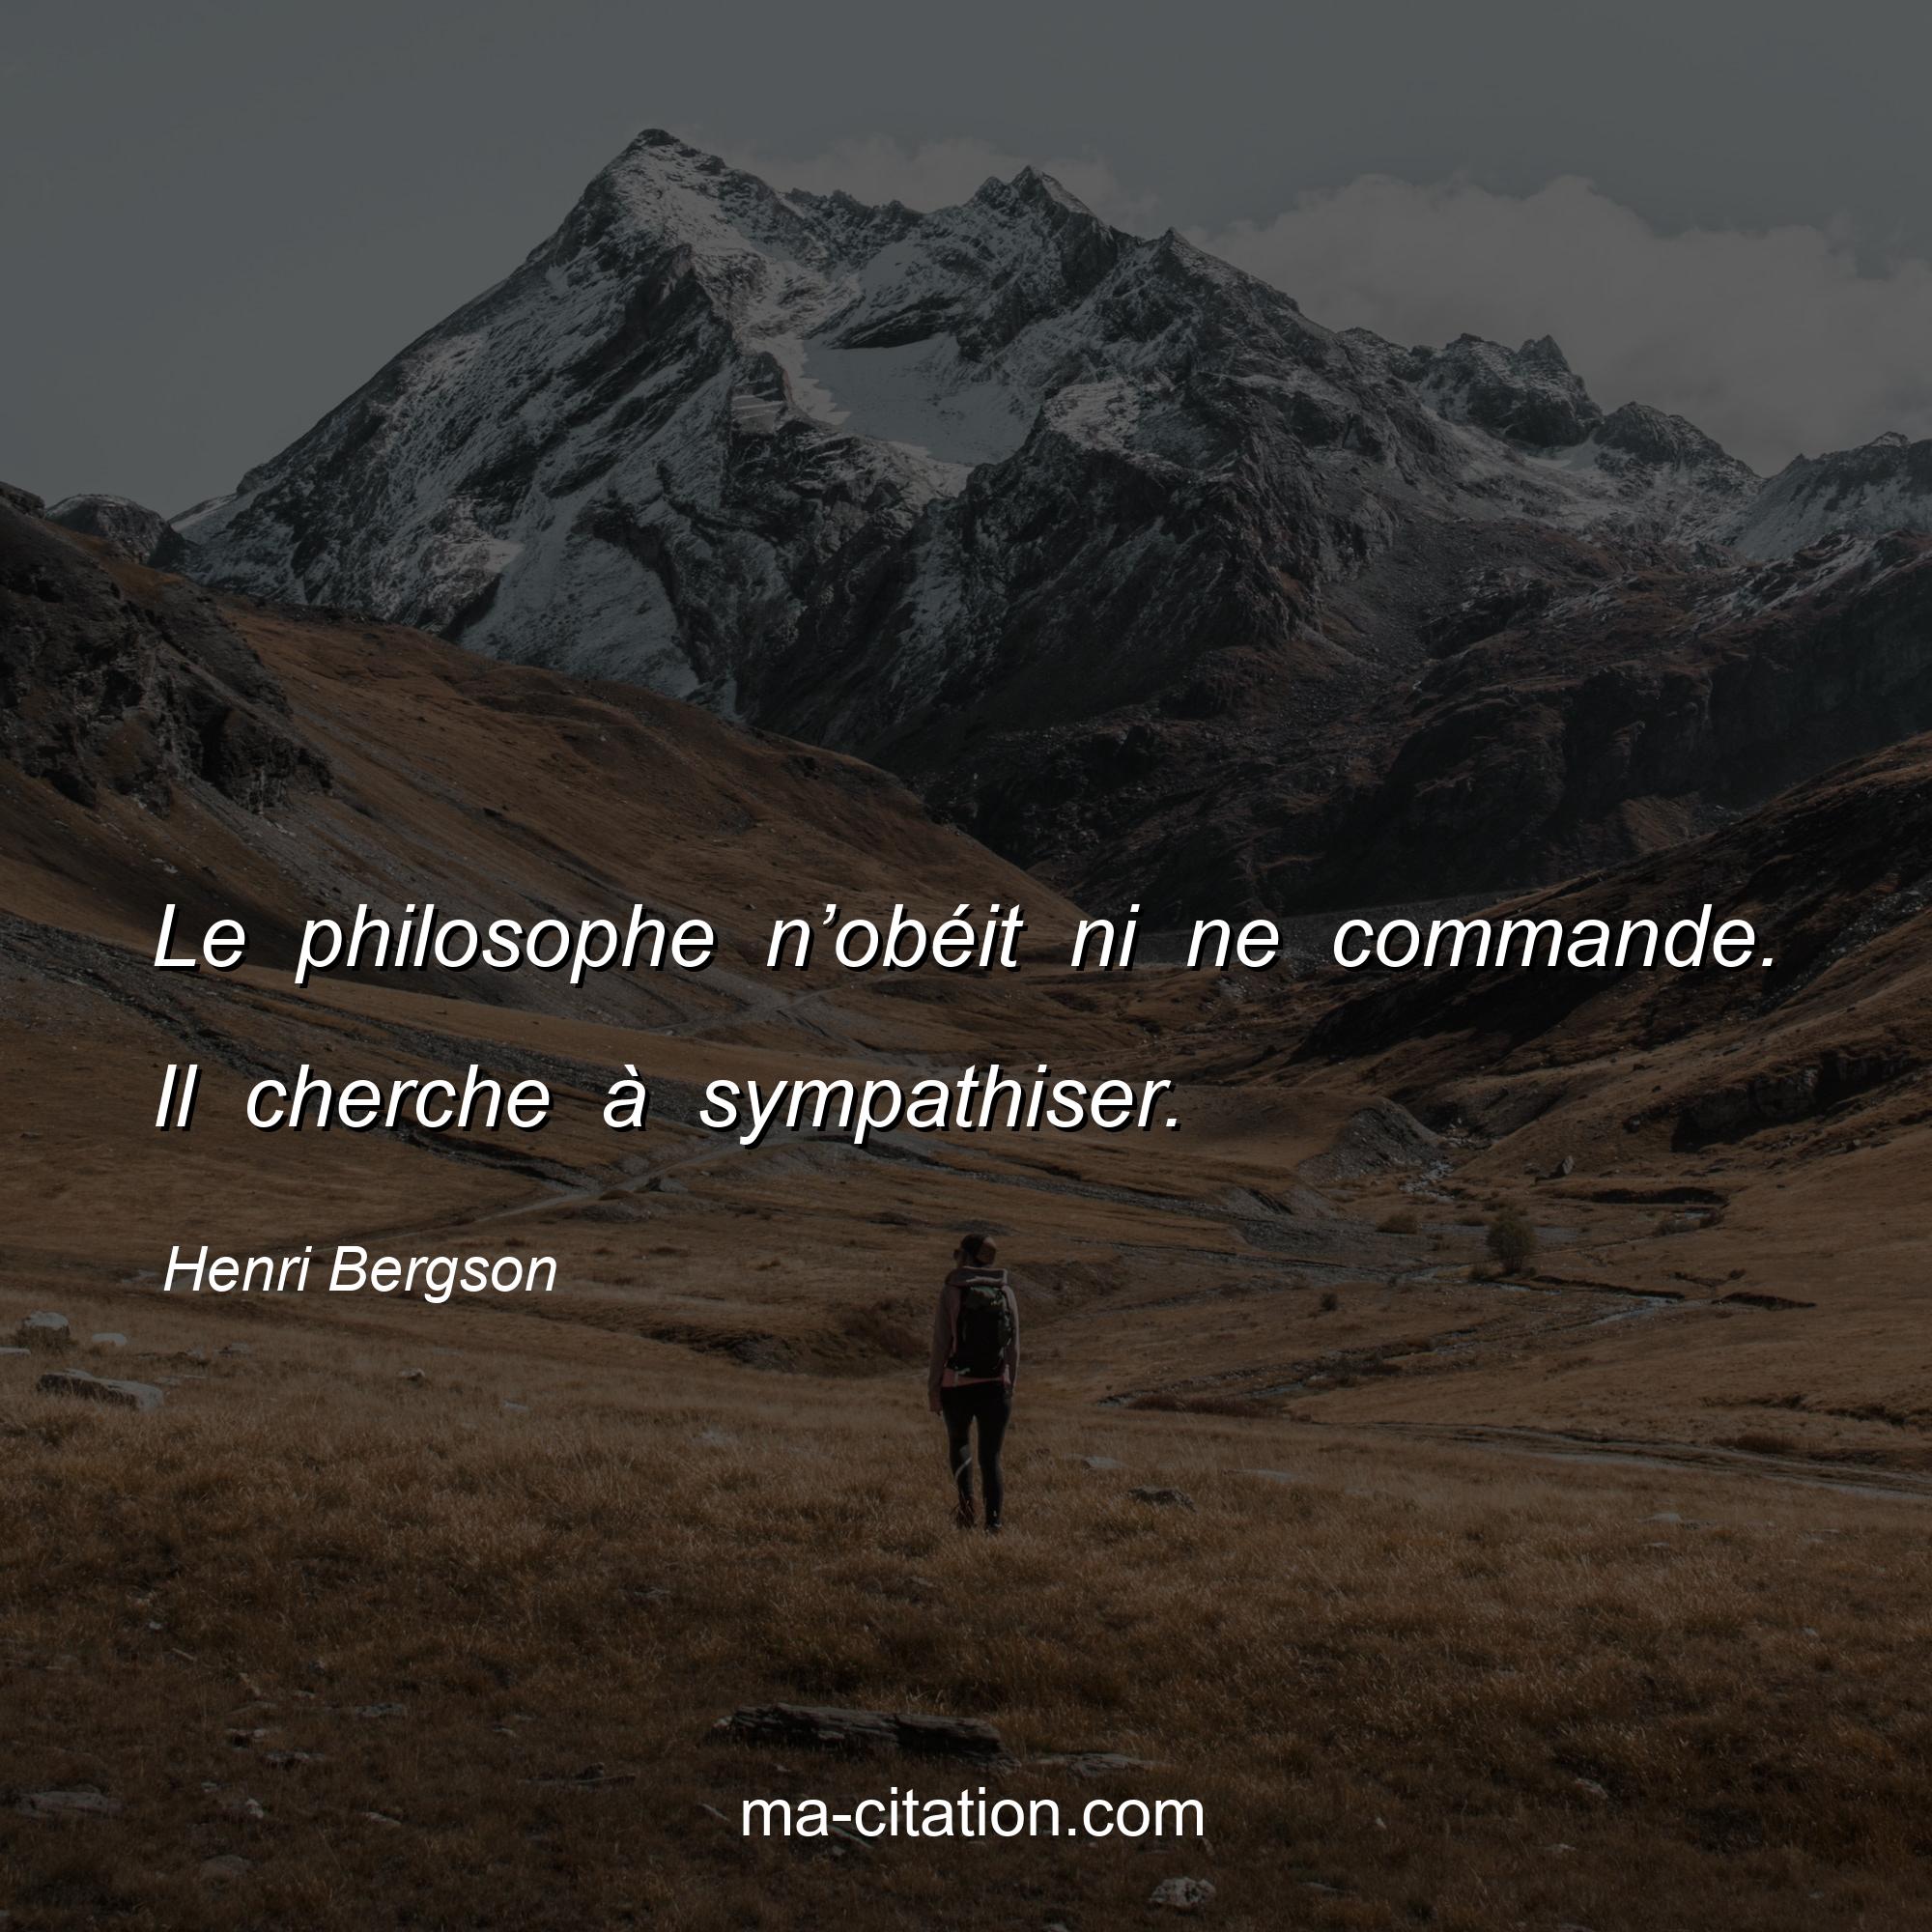 Henri Bergson : Le philosophe n’obéit ni ne commande. Il cherche à sympathiser.